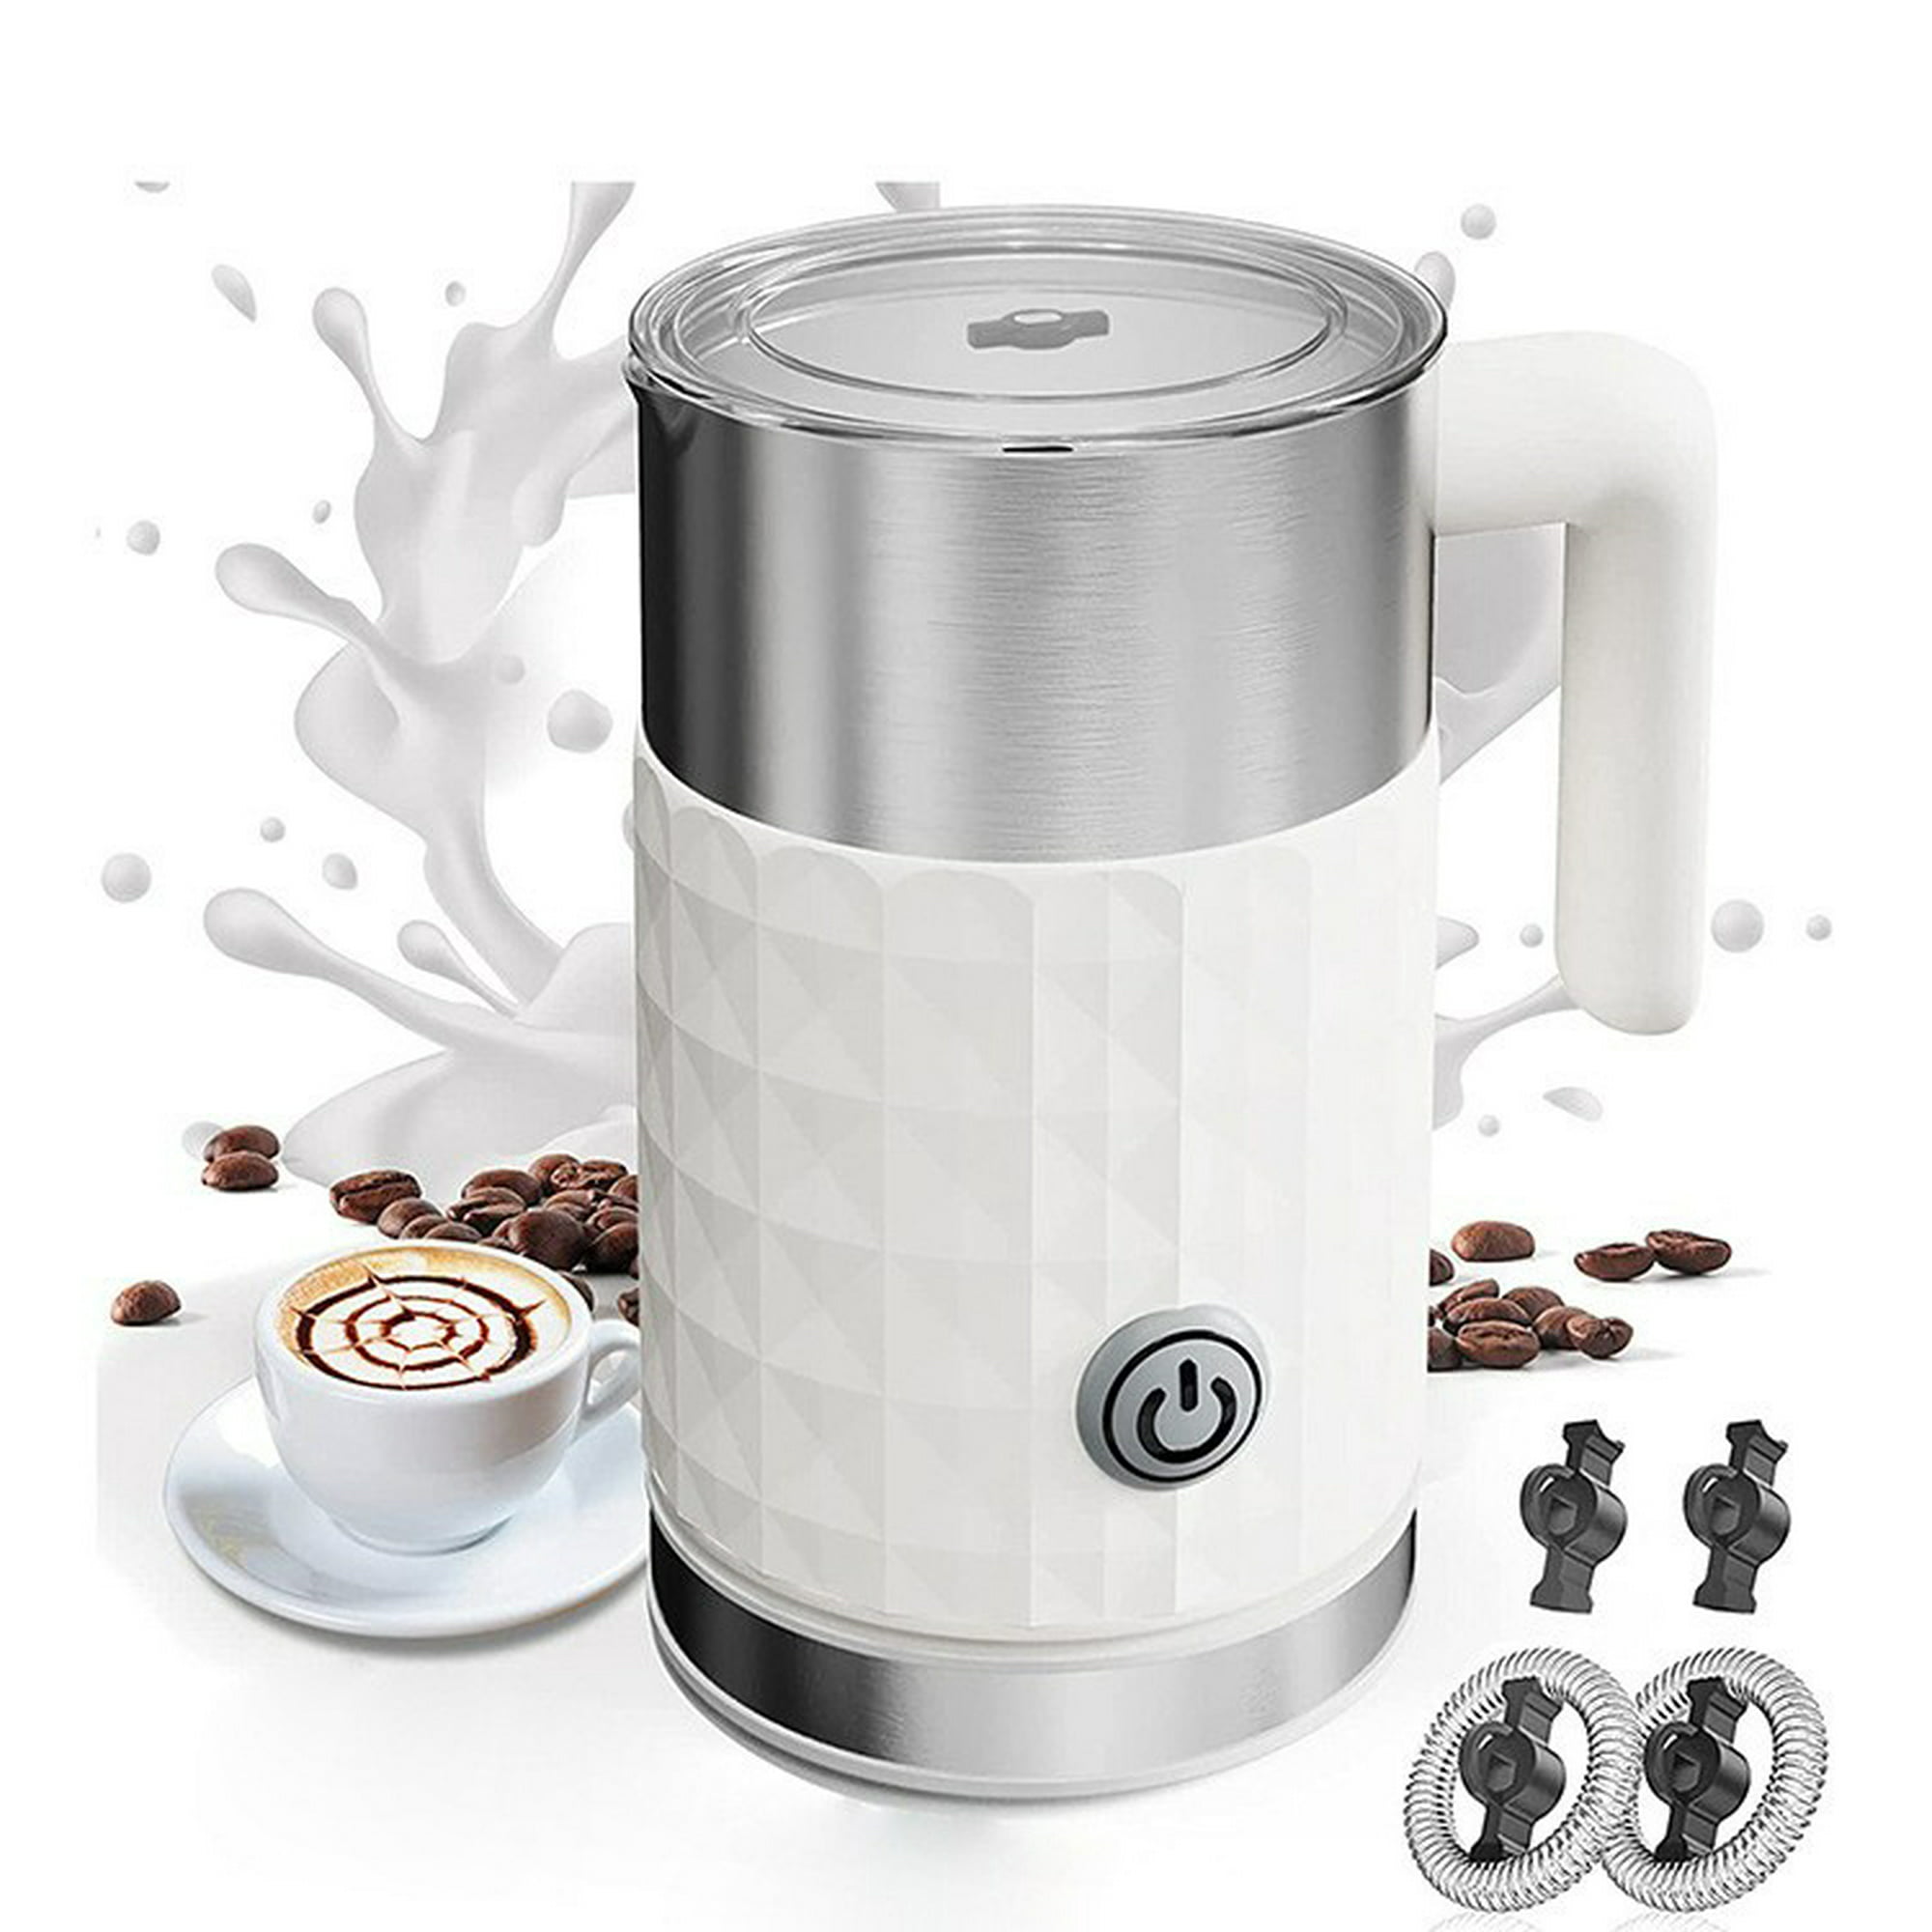  Espumador de leche 4 en 1, vaporizador eléctrico automático de  espuma fría y caliente y calentador de leche para latte, capuchinos,  macchiato, leche de chocolate caliente : Hogar y Cocina